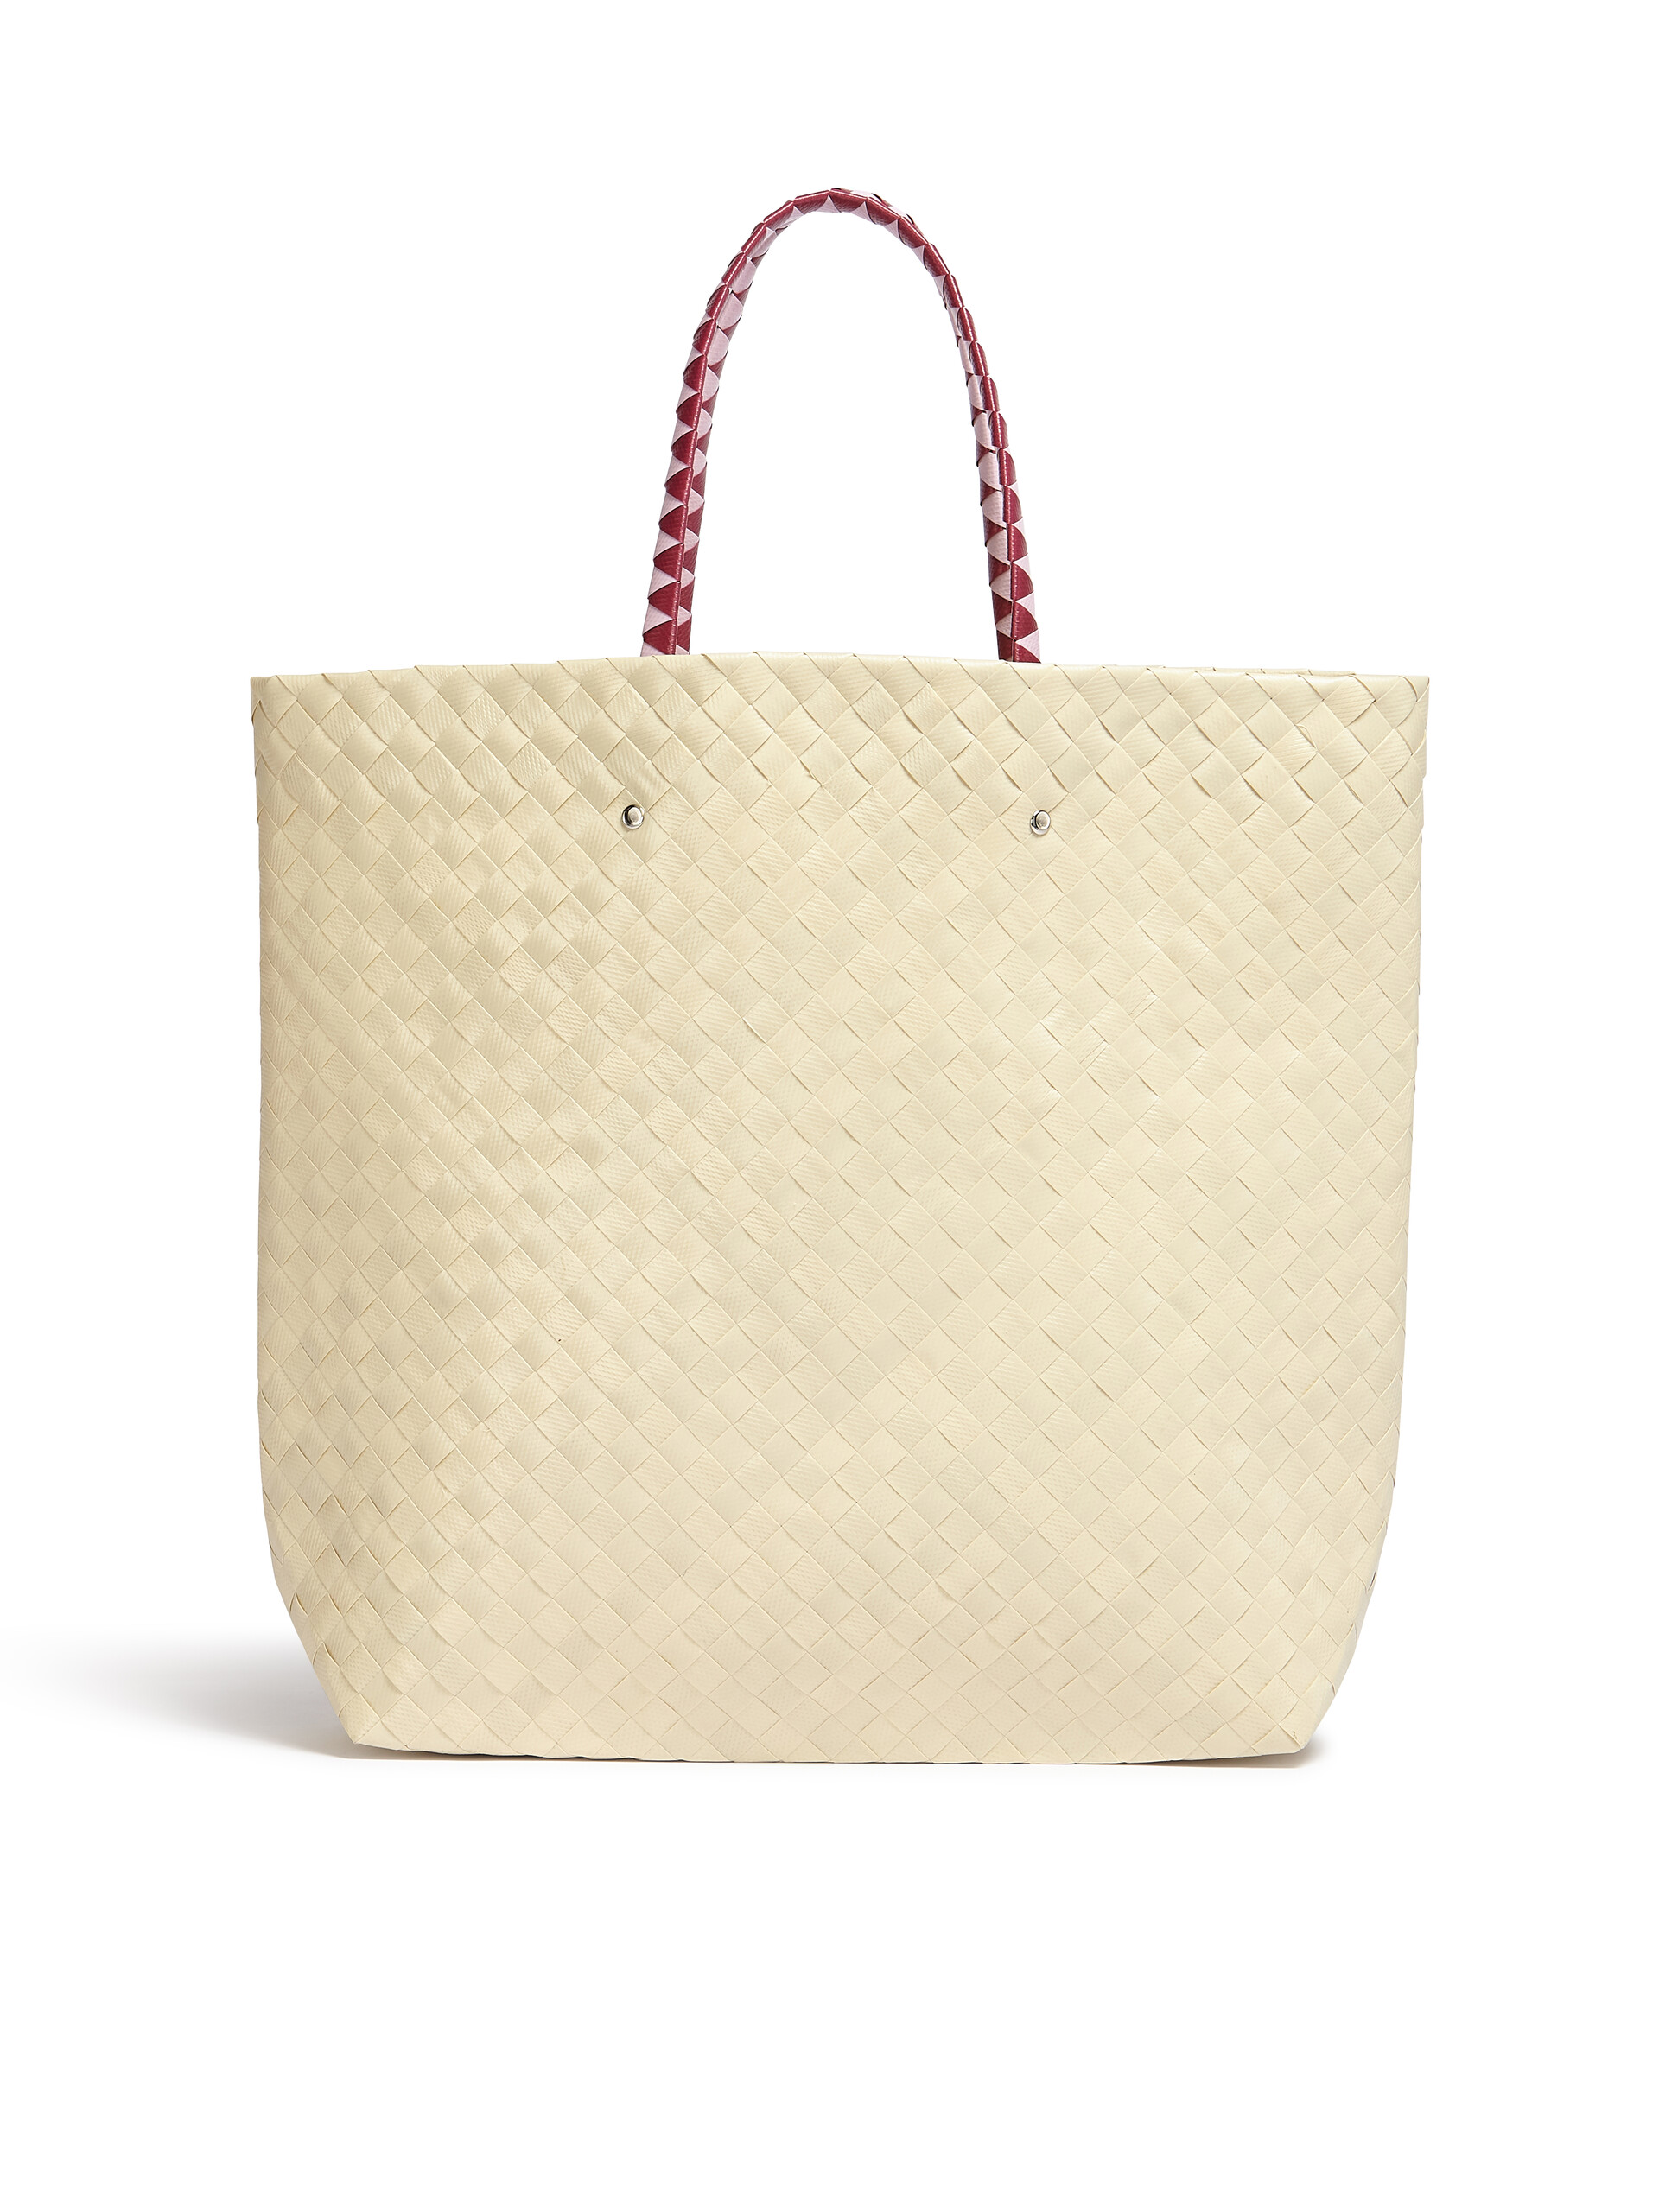 MARNI MARKET medium bag in white flower motif - Bags - Image 3